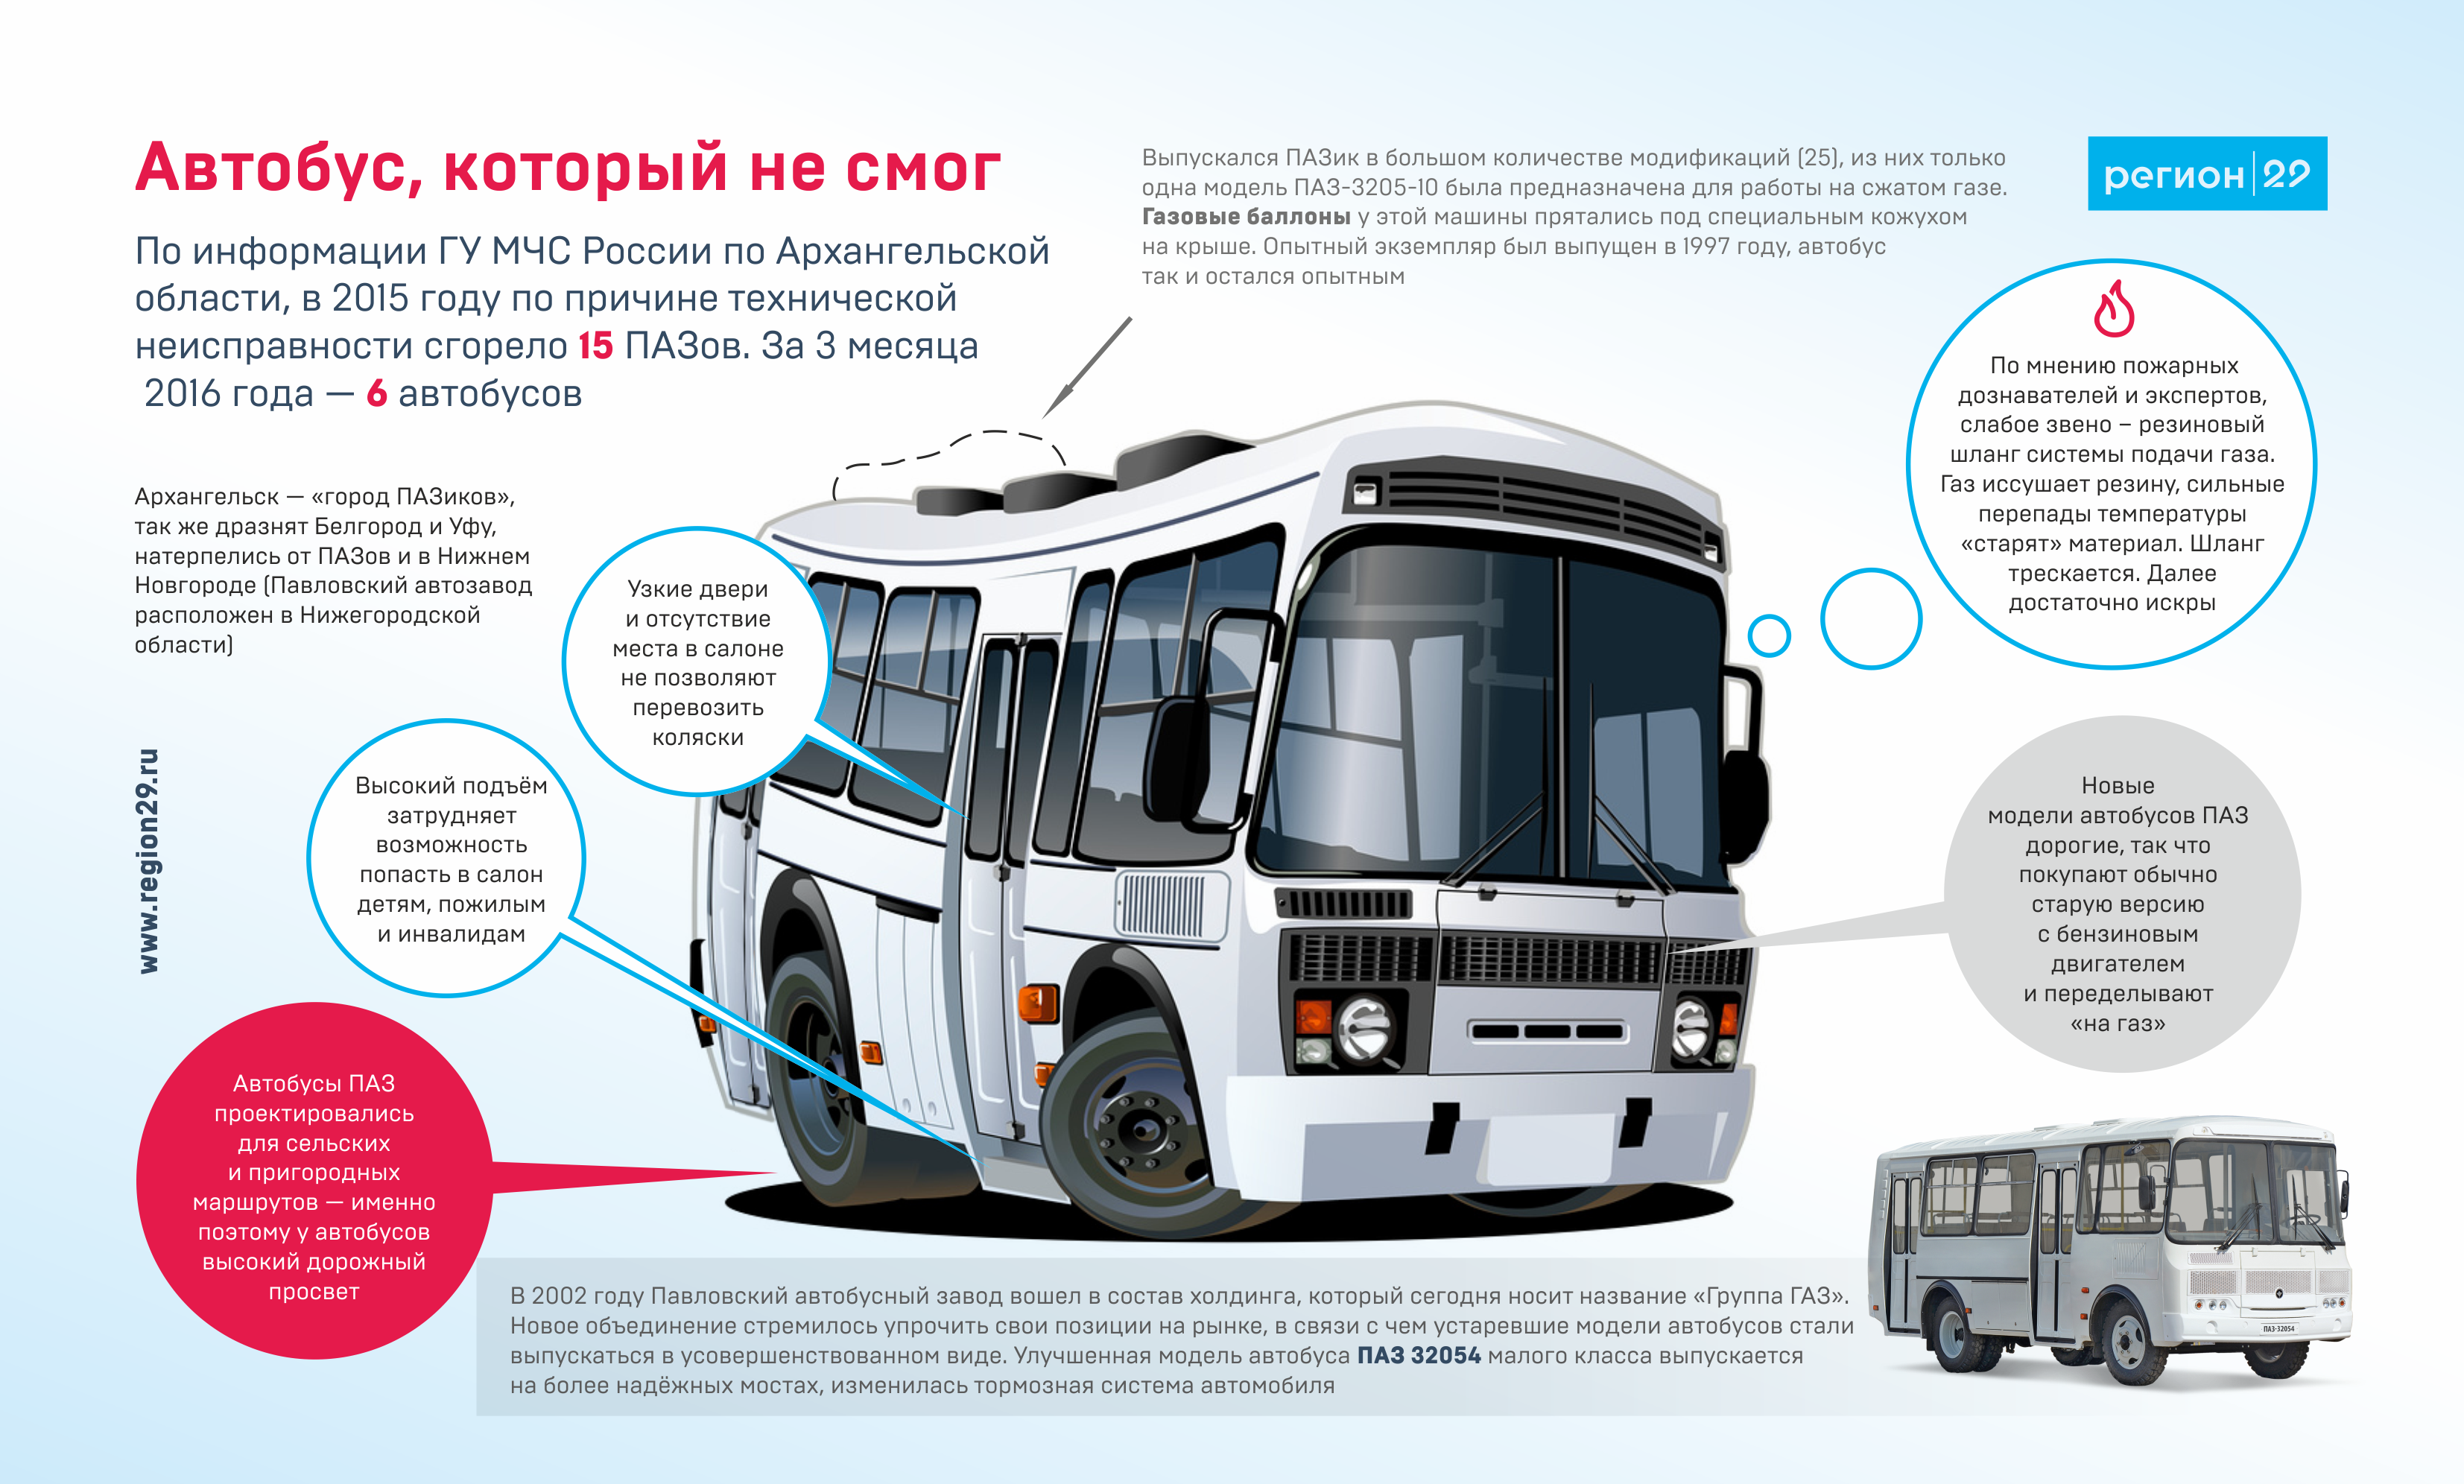 Производство пригородных автобусов лиаз-5250 «вояж» на ликинском автобусном заводе